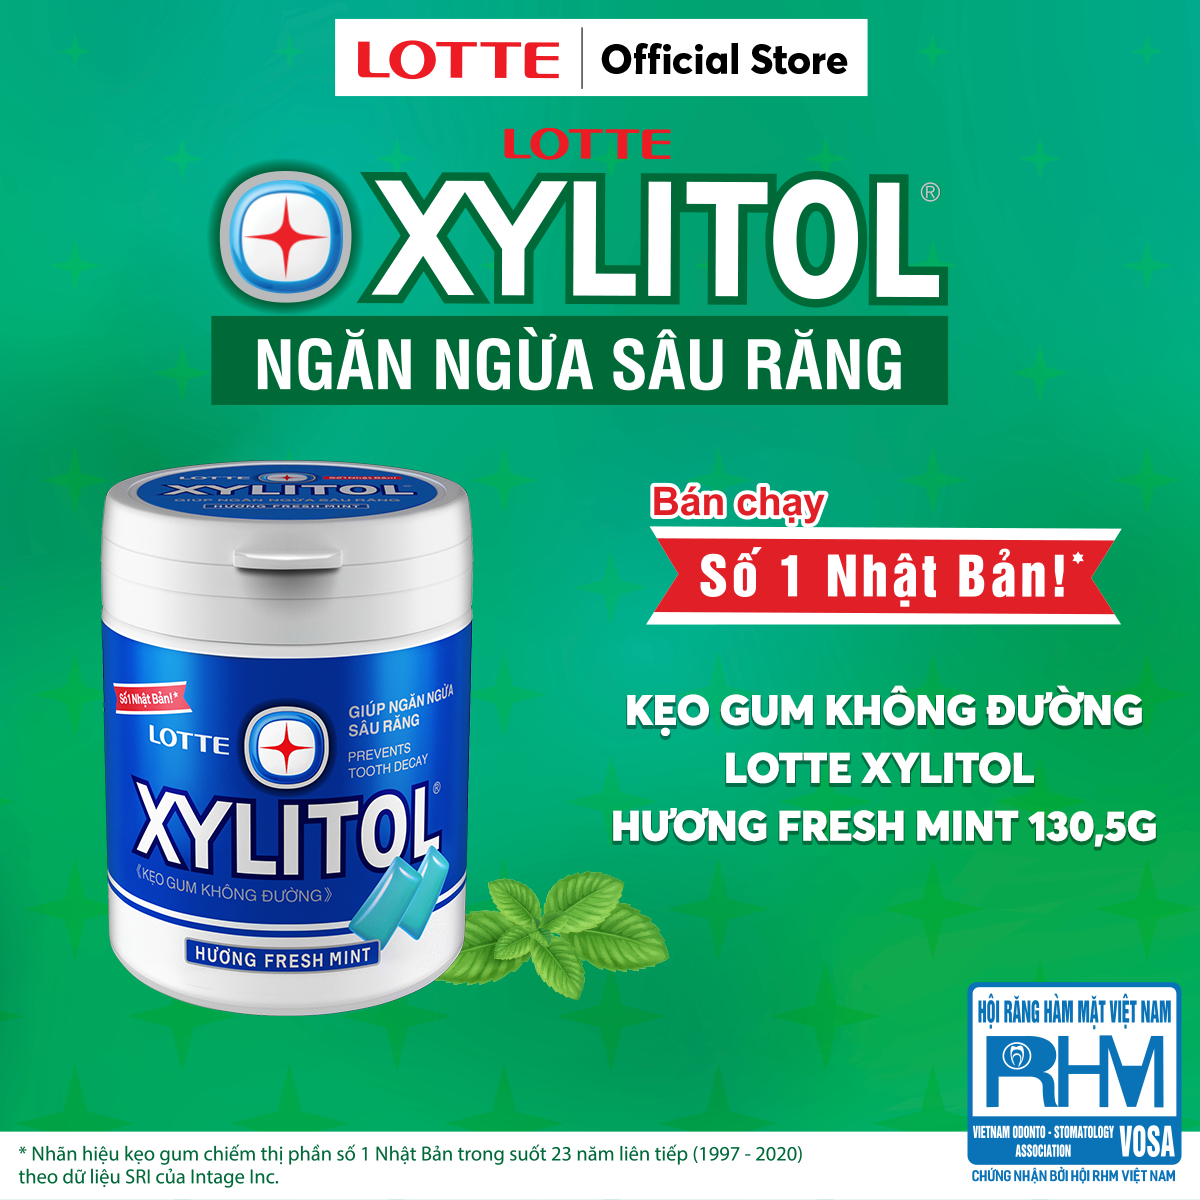 Combo 6 hũ Kẹo Gum không đường Lotte Xylitol - Hương Fresh Mint 137,8 g